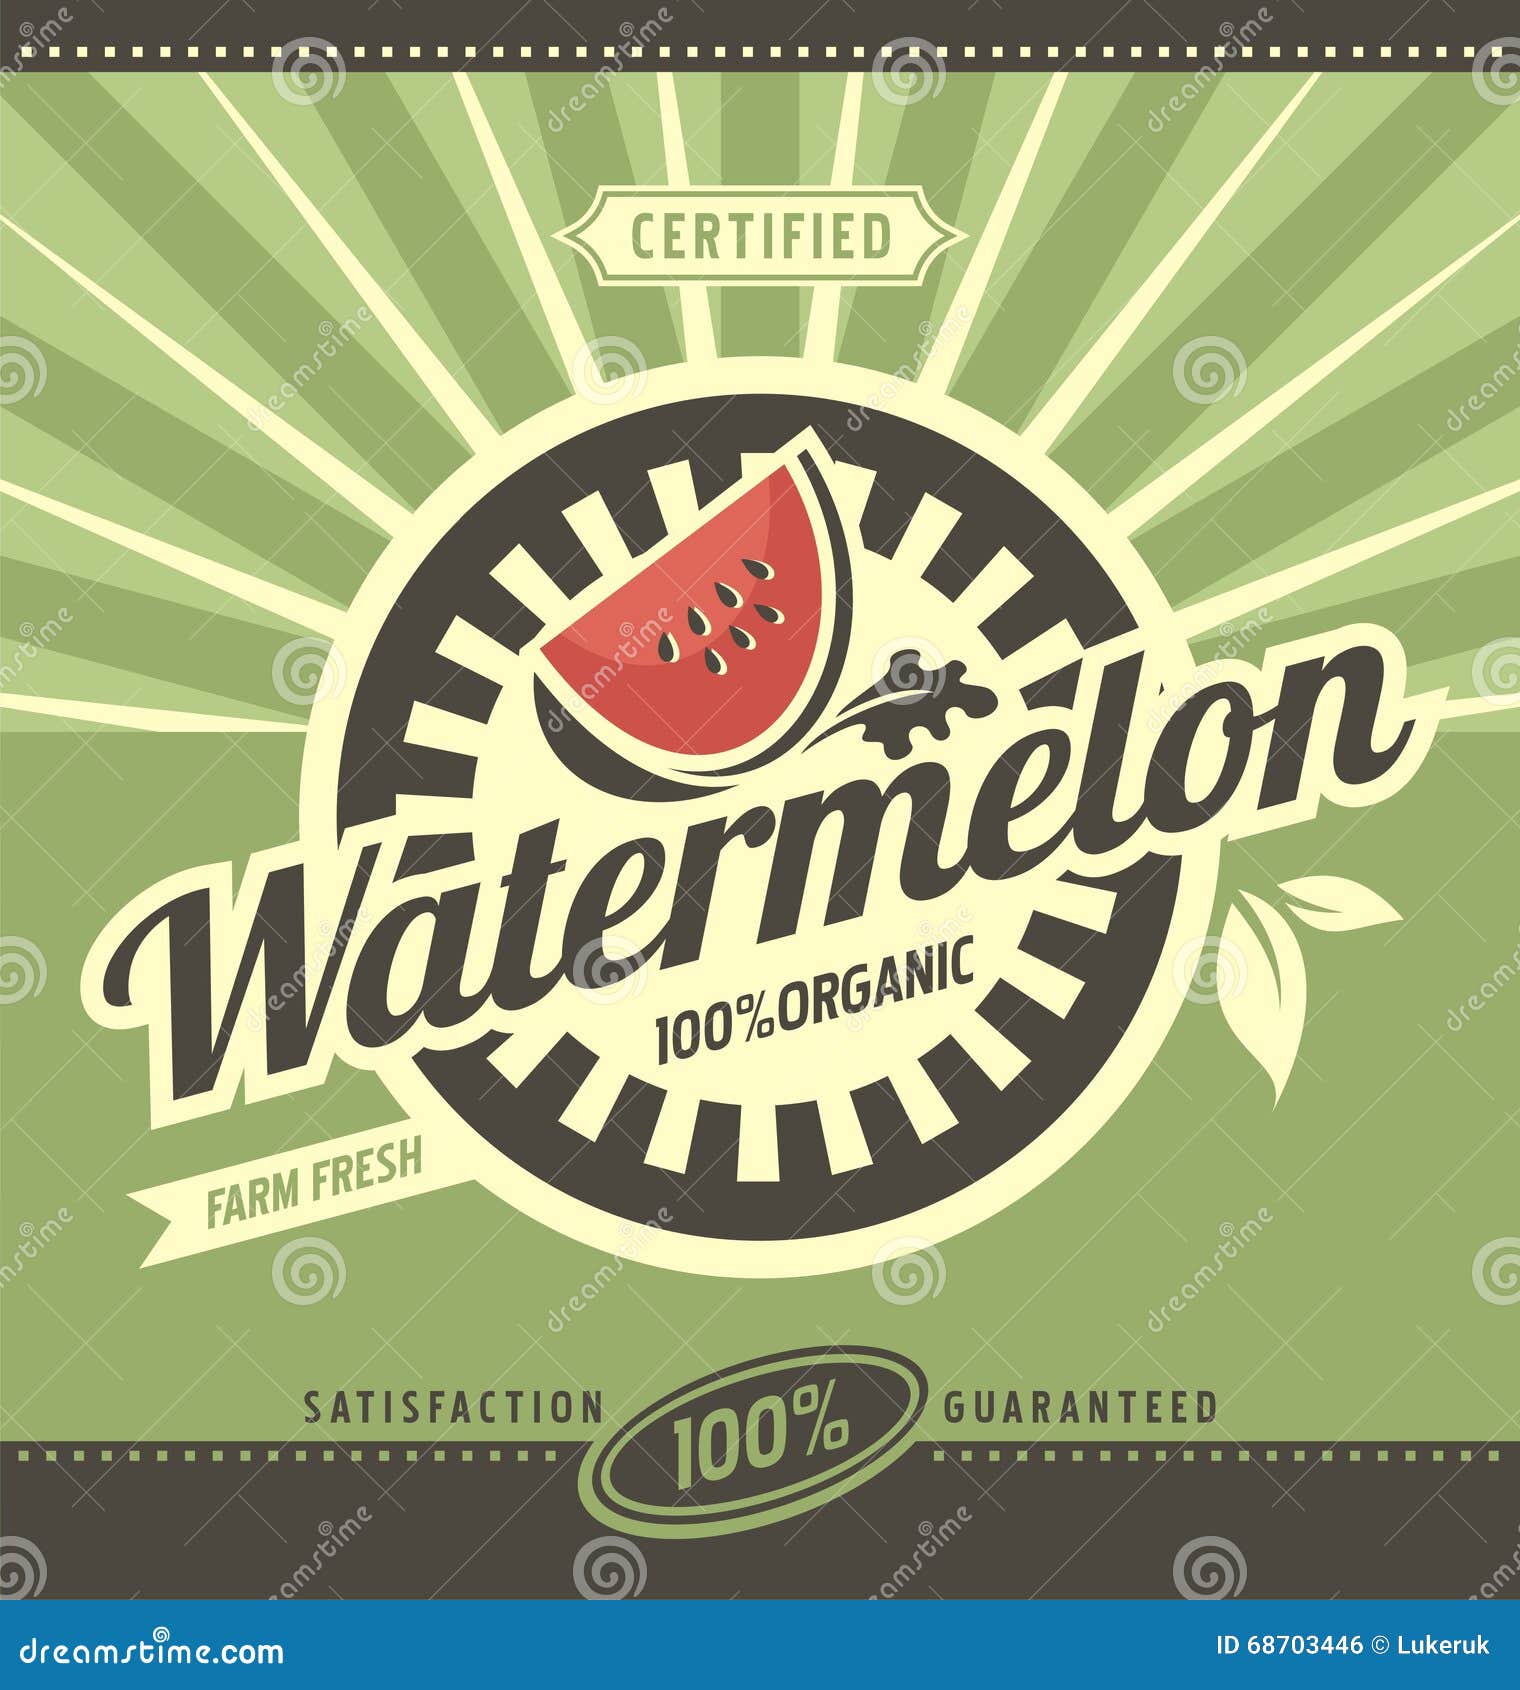 watermelon retro ad concept